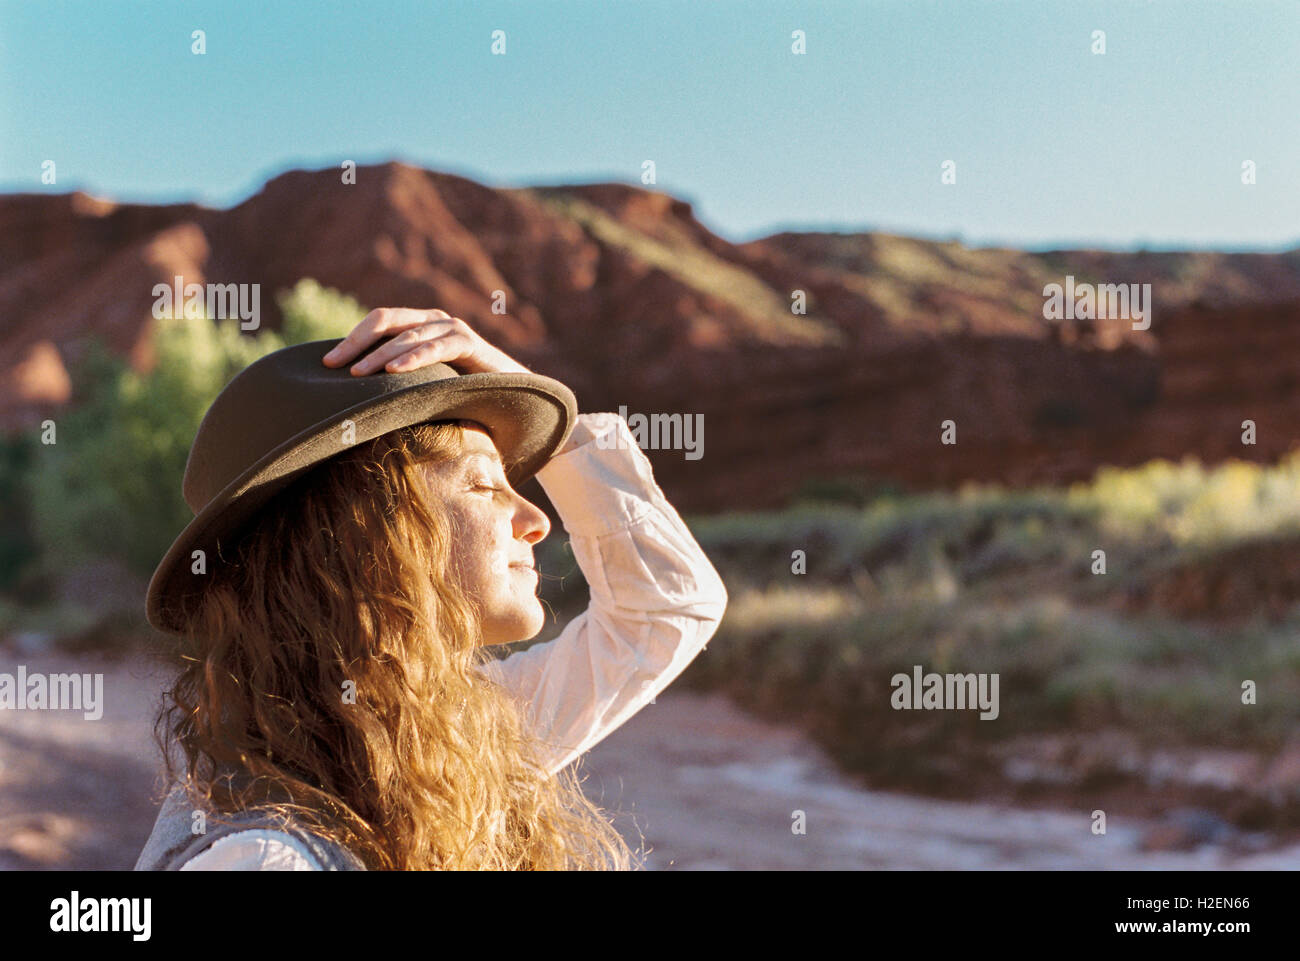 Une femme portant un chapeau debout dans un espace ouvert avec des montagnes, le visage vers le soleil. Banque D'Images